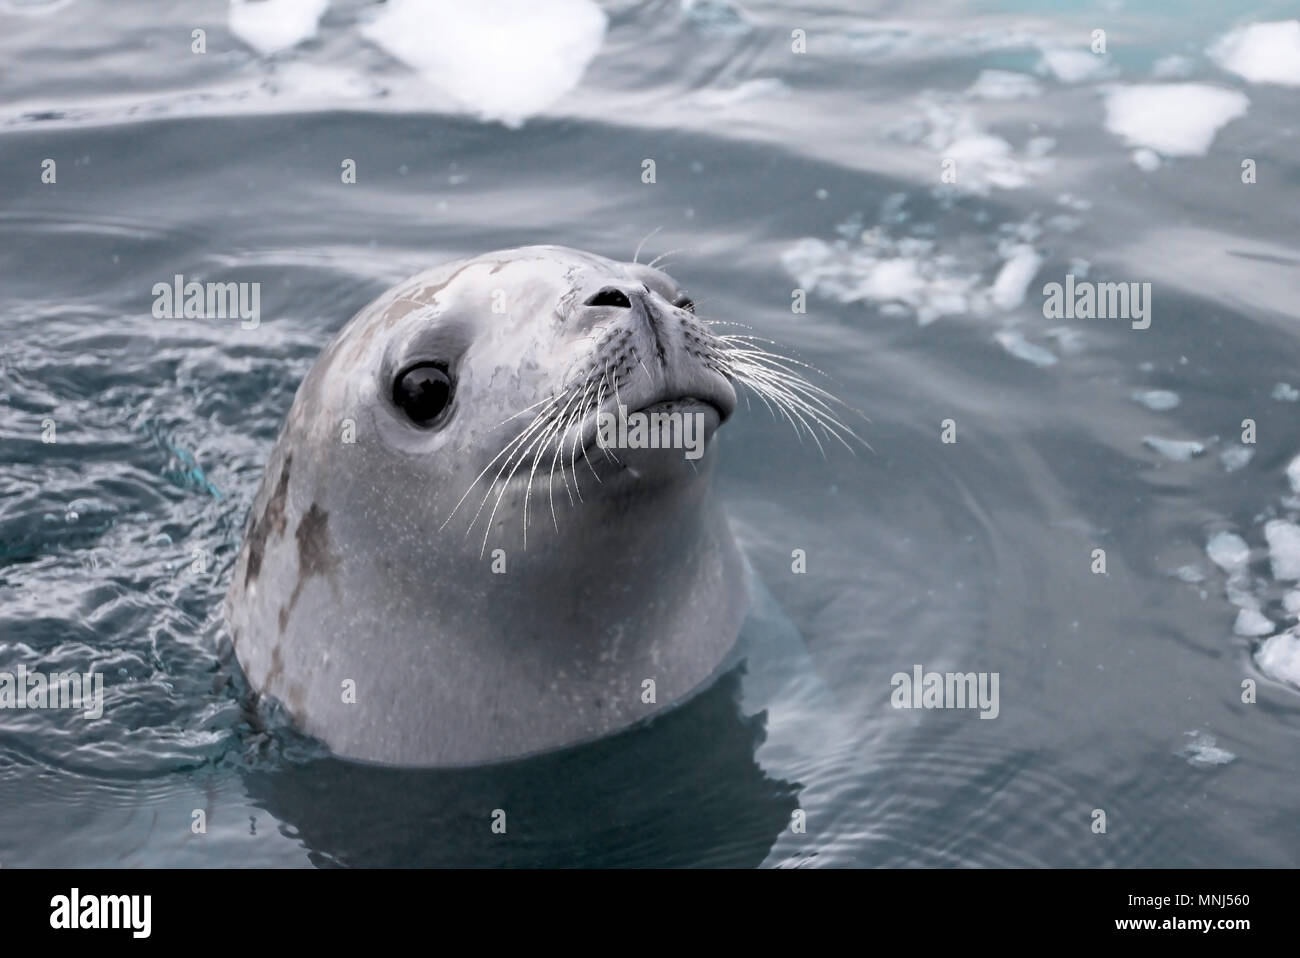 Seal swimming and looking cute in Antarctic Peninsula, Antarctica Stock Photo